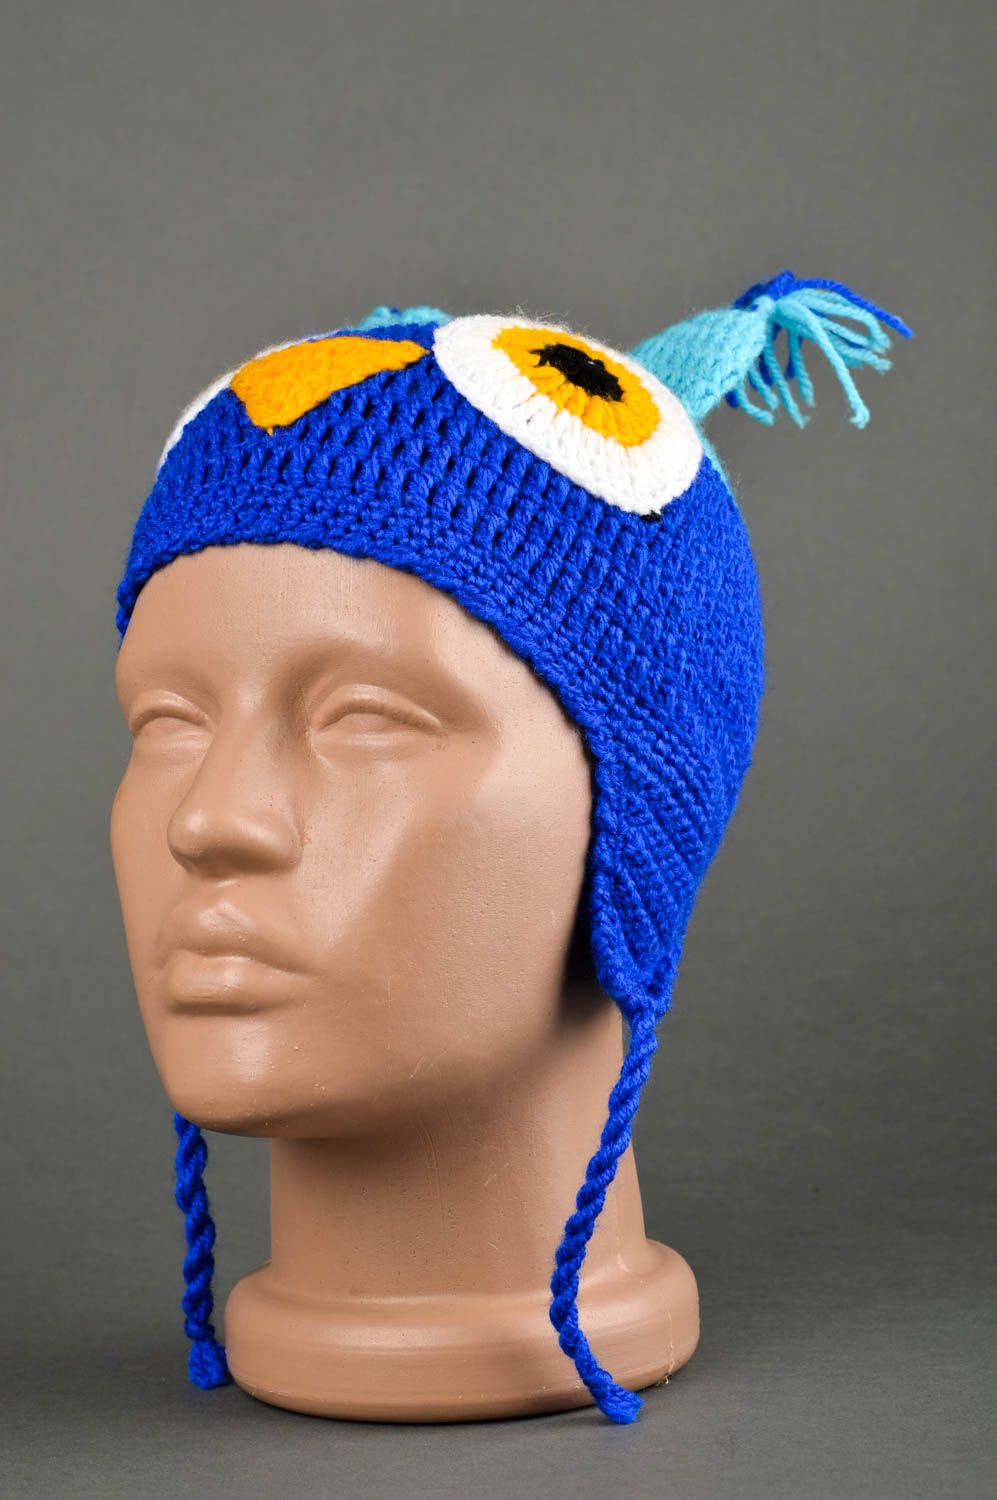 Handmade warm hat animal hat headwear for children kids accessories kids gifts photo 1